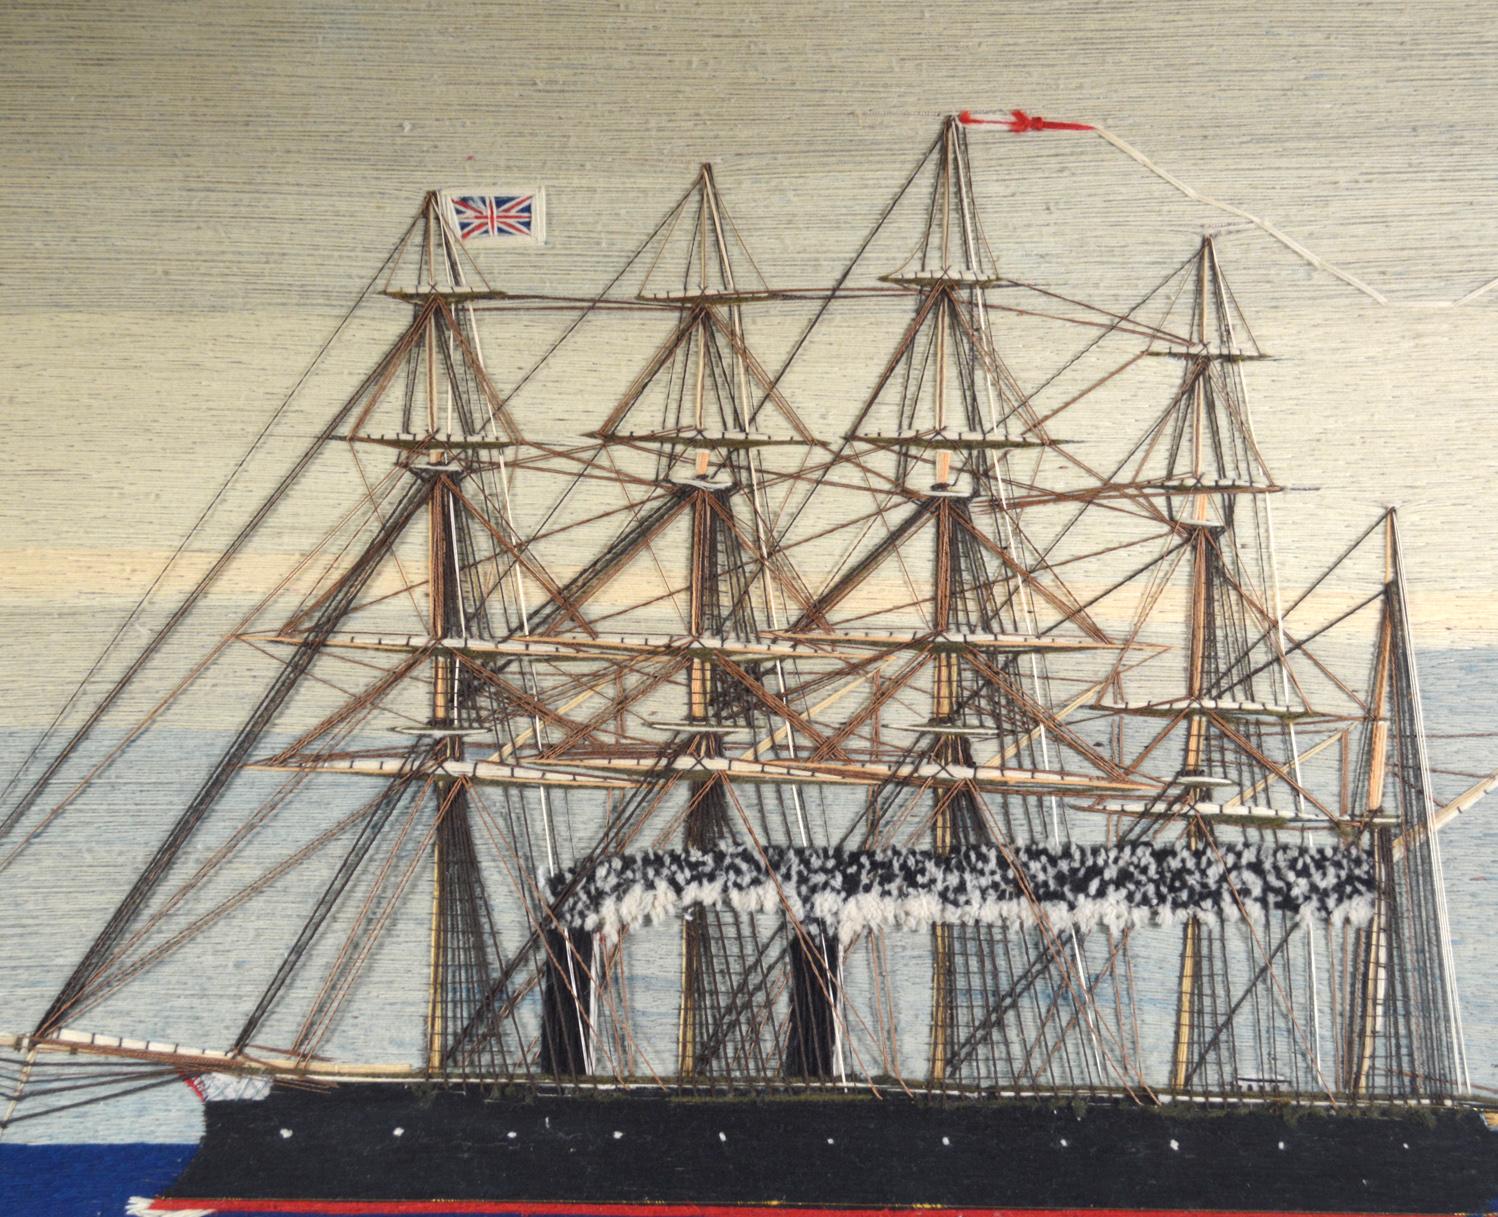 Sailor's Woolwork of Royal Navy Fünfmastschiff unter Dampf, 
HMS Minotaur oder HMS Agincourt,
Minotaur Class Broadside Ironclad,
Um 1880

Die Seemannswolle zeigt die Backbordansicht eines Fünfmasters, der unter Dampf steht, der als französische